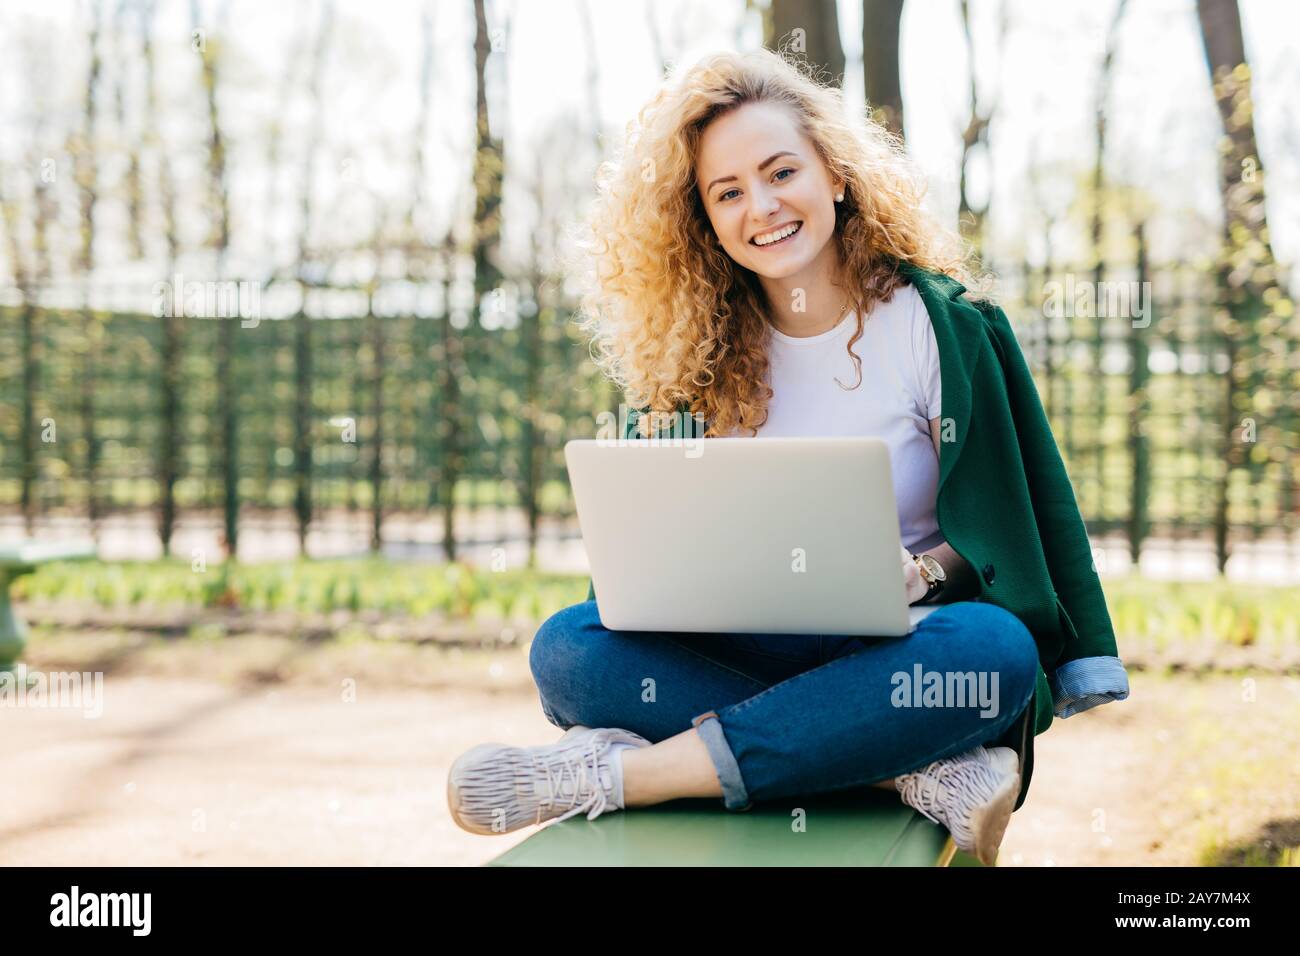 Gefiel der europäischen Frau, die schöne, flauschige blonde Haare hat, die Jeans, Jacke und Sportschuhe trägt, die gekreuzte Beine mit einem Laptop-Computer für Kommun sitzen Stockfoto